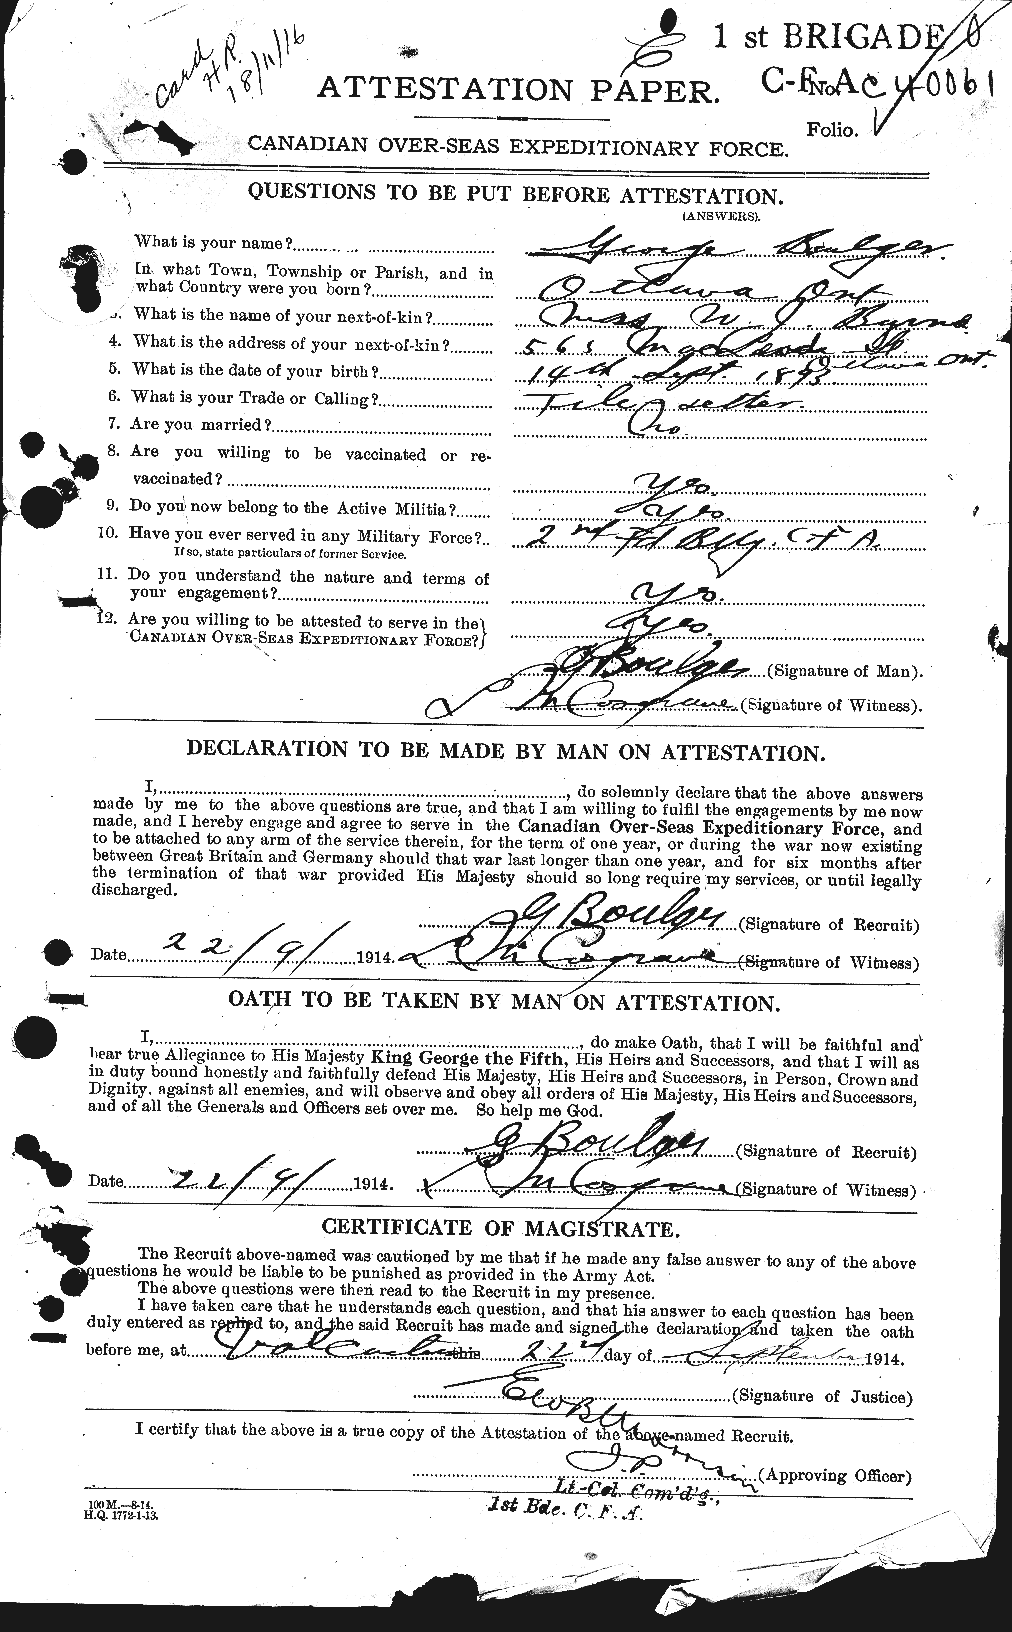 Dossiers du Personnel de la Première Guerre mondiale - CEC 252980a